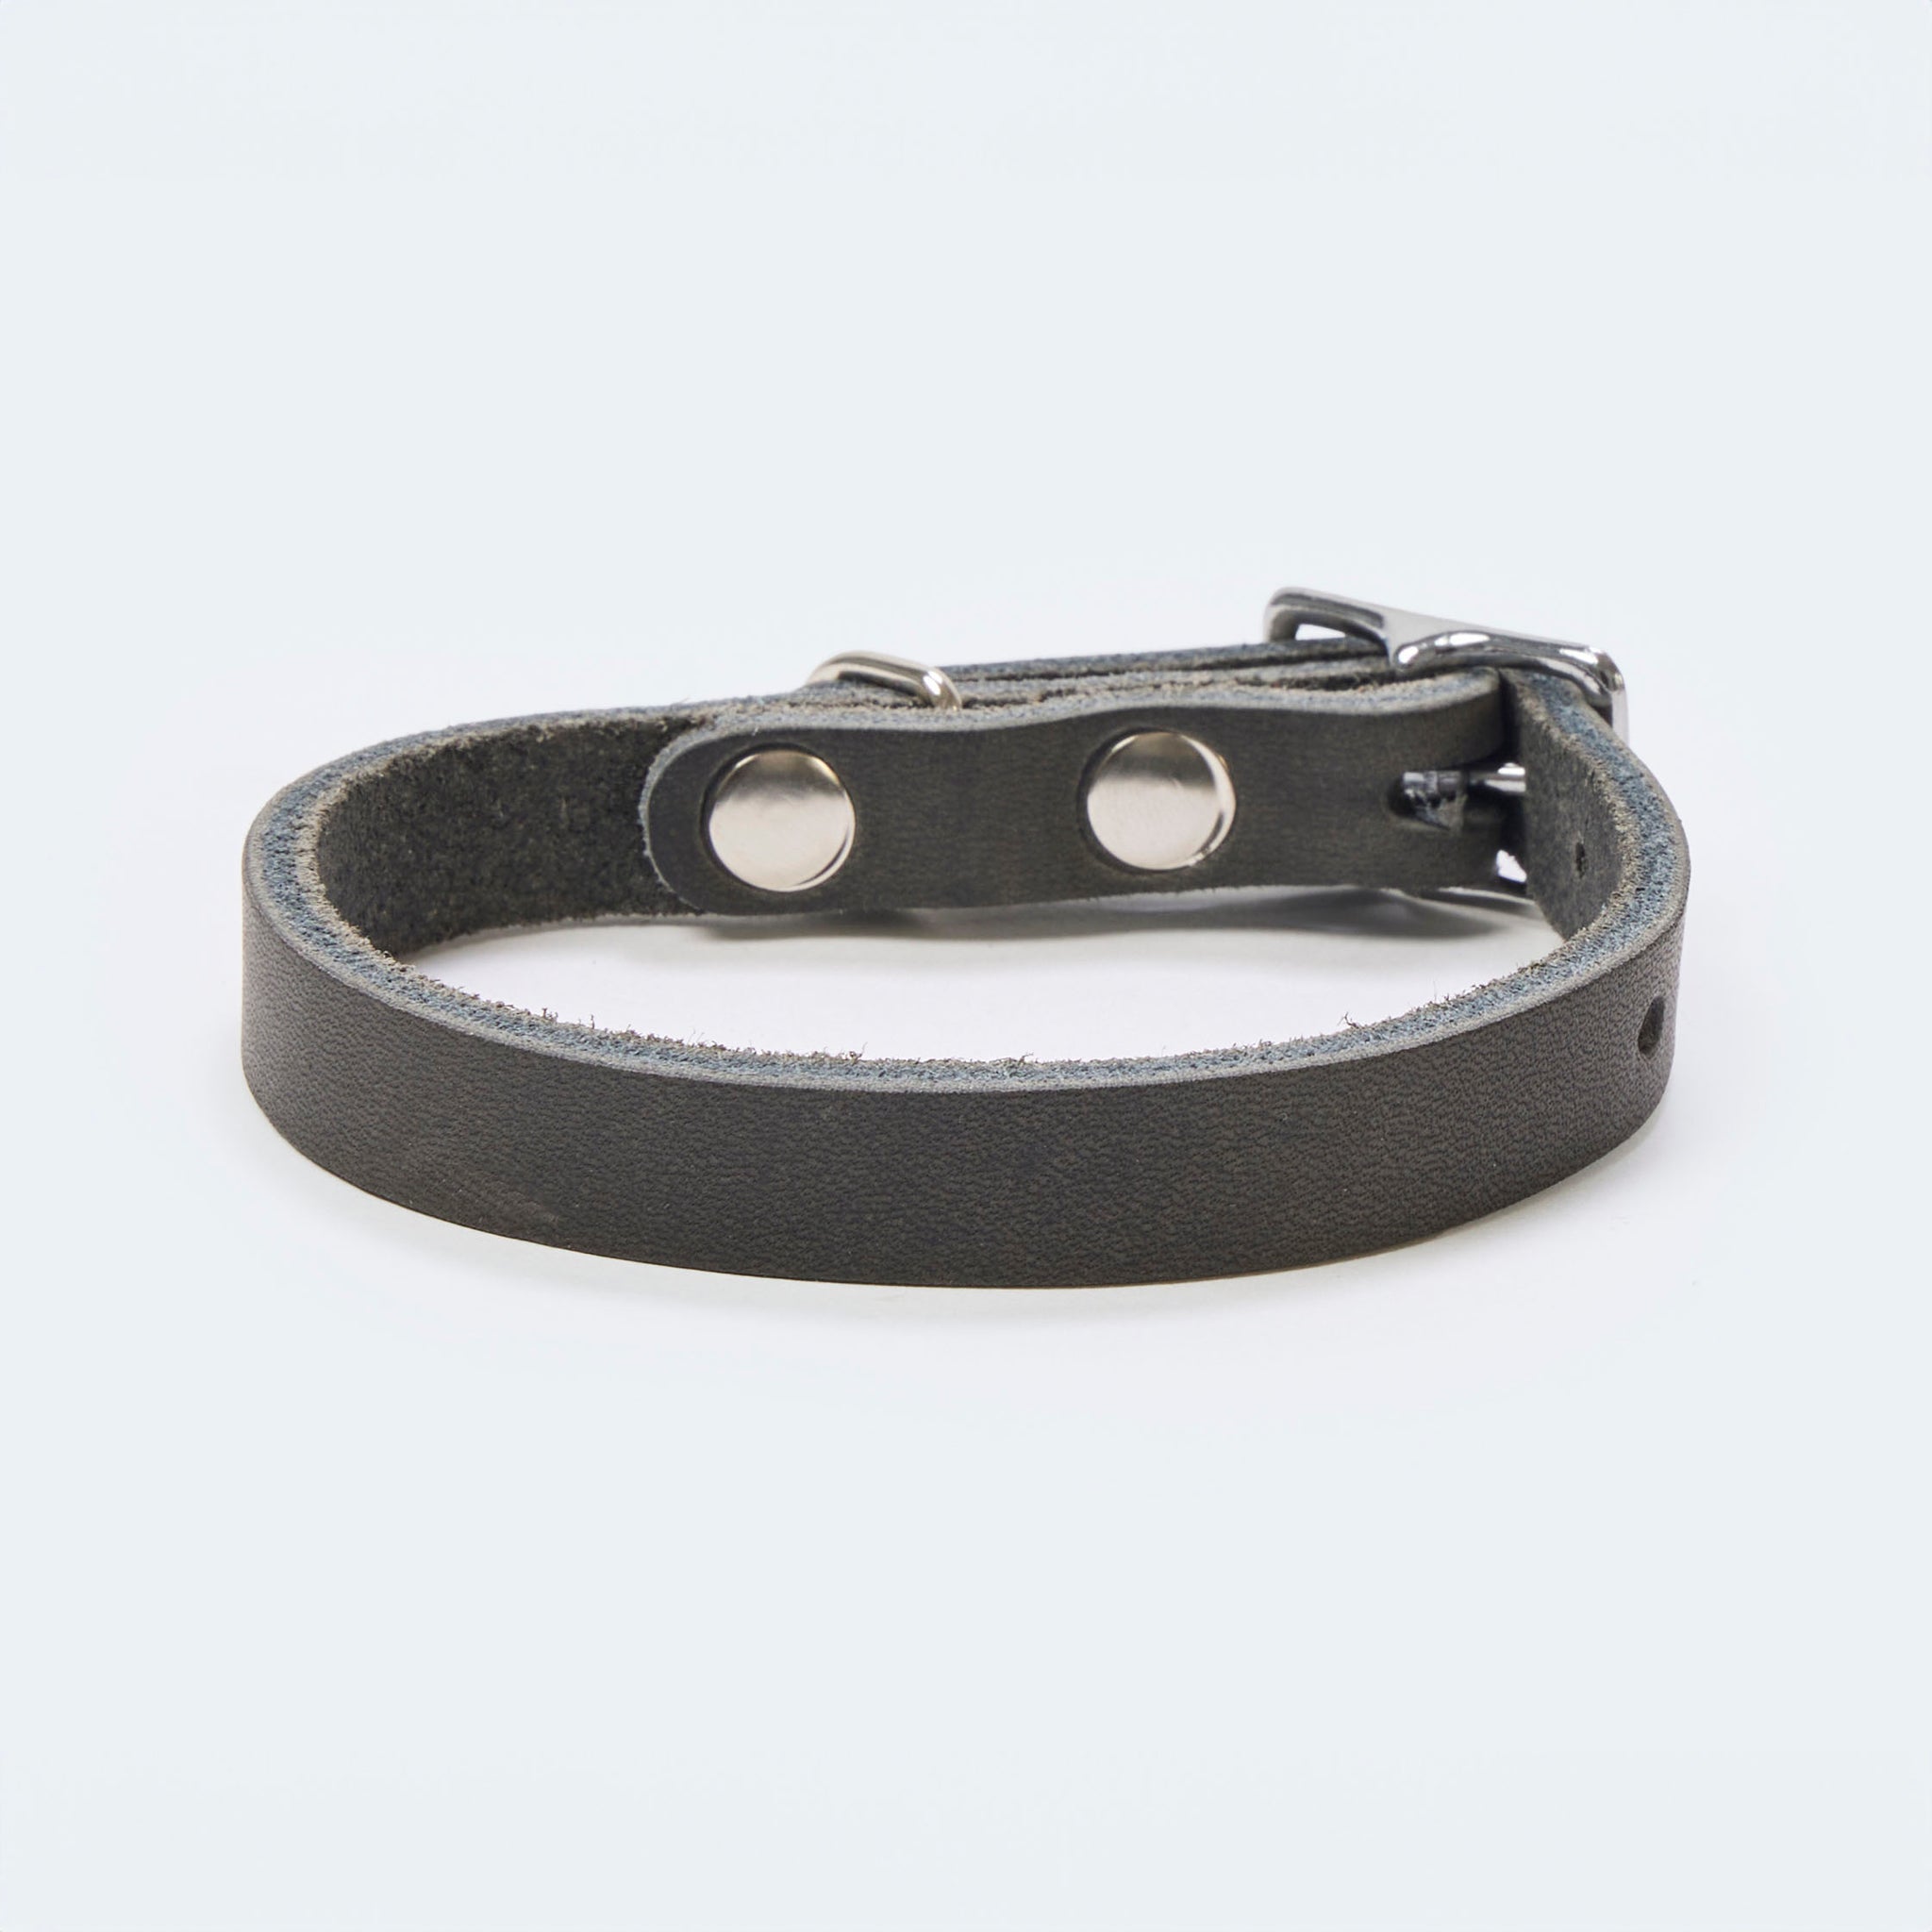 Hundehalsband Fettleder Dunkelgrau-Silber / 22-28cm - von Leopold's kaufen bei leopolds-finest [Dunkelgrau-Silber]